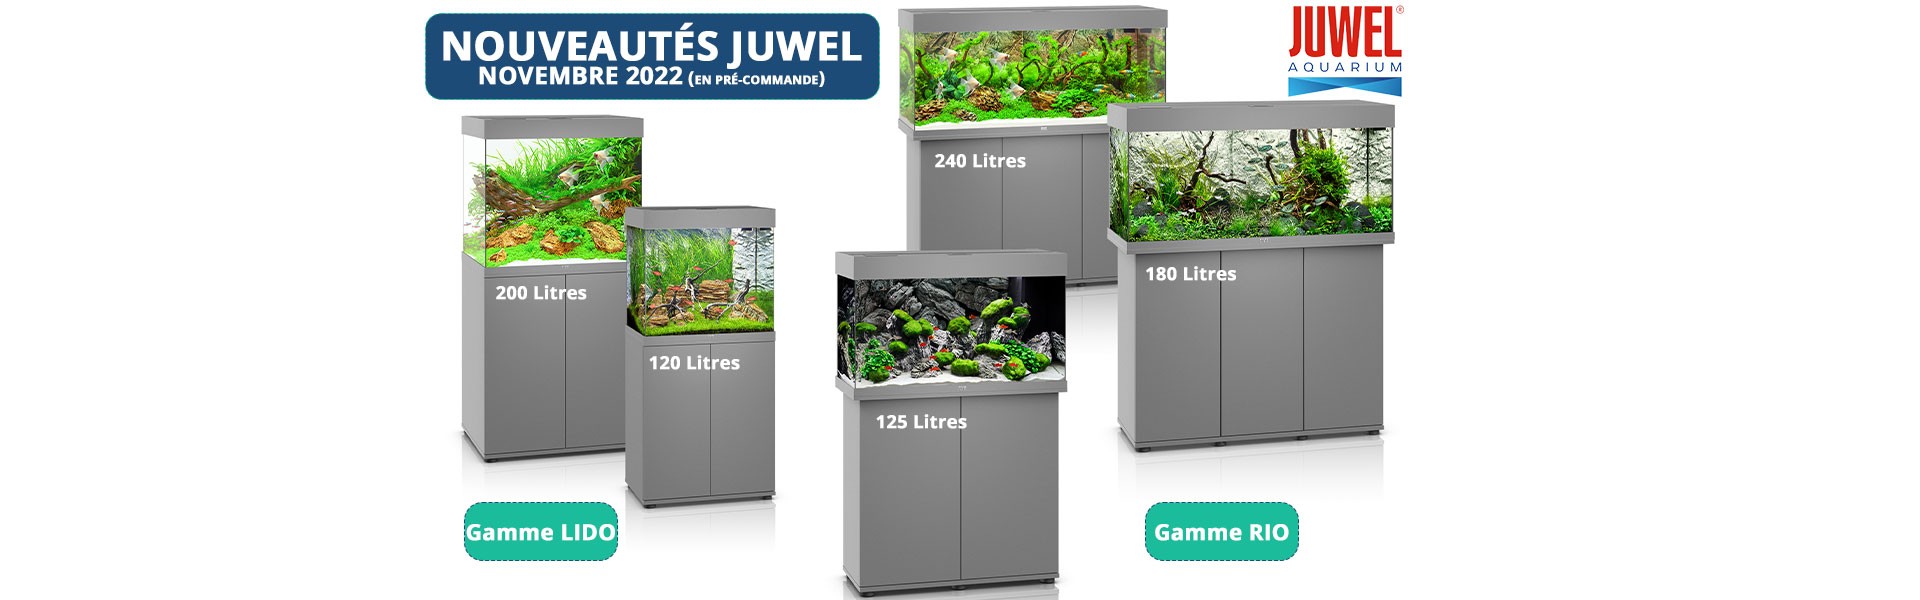 Aquarium JUWEL - Nouveau colori gris pour la gamme Lido et Rio